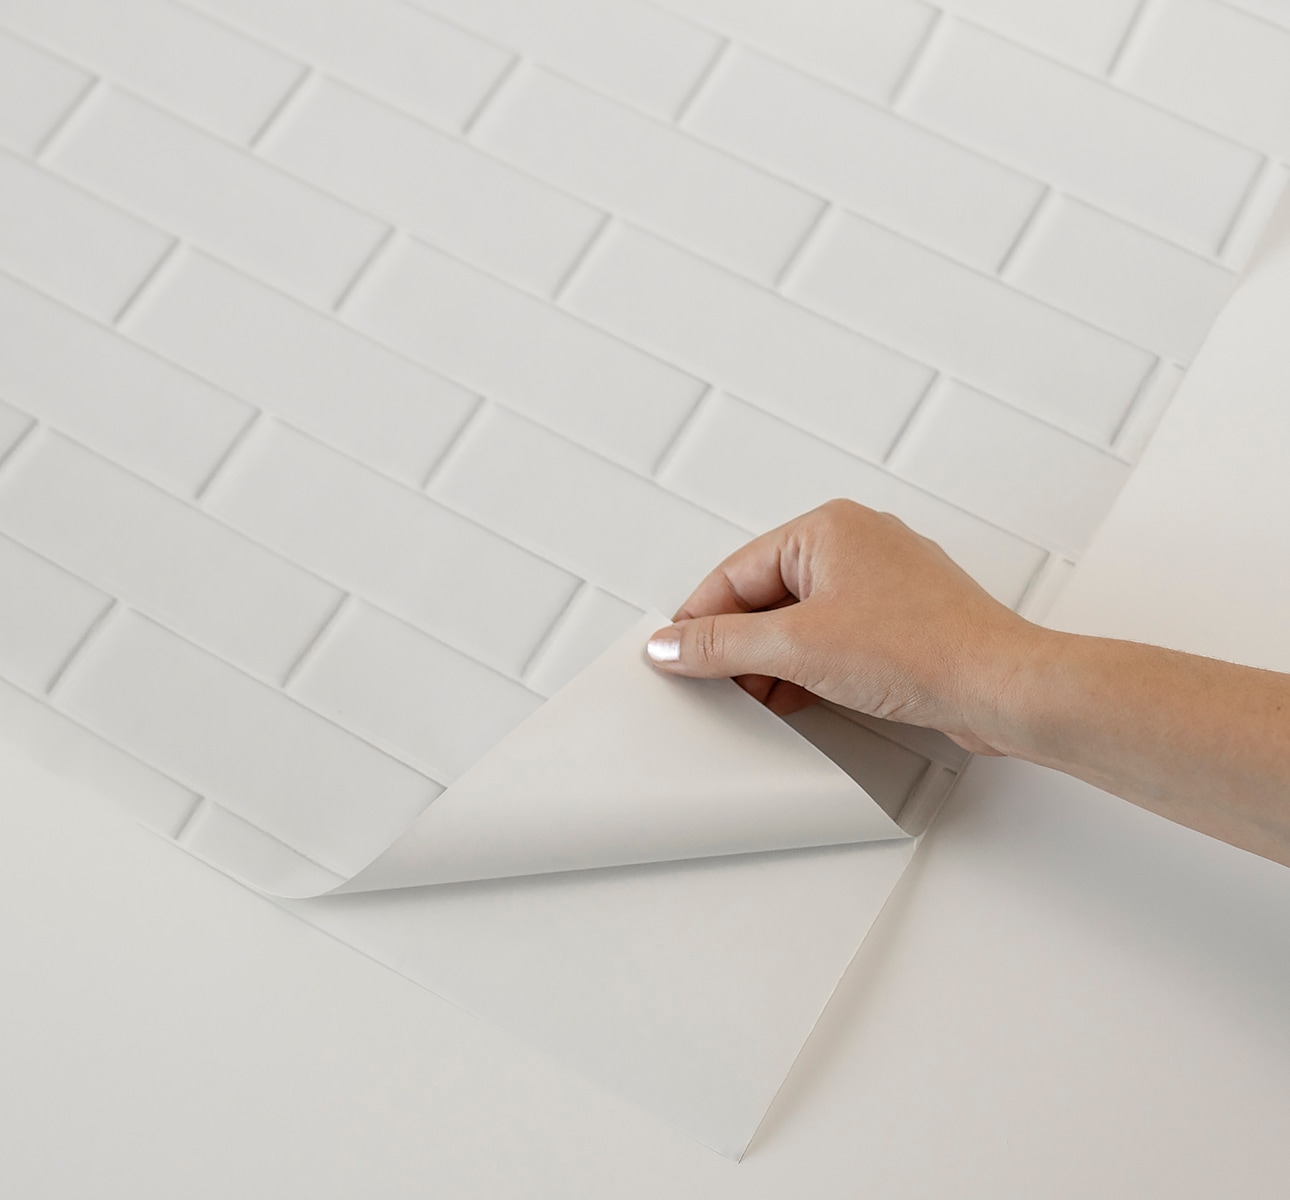 Self-Adhesive Wallpaper & Tiles - Peel & Stick